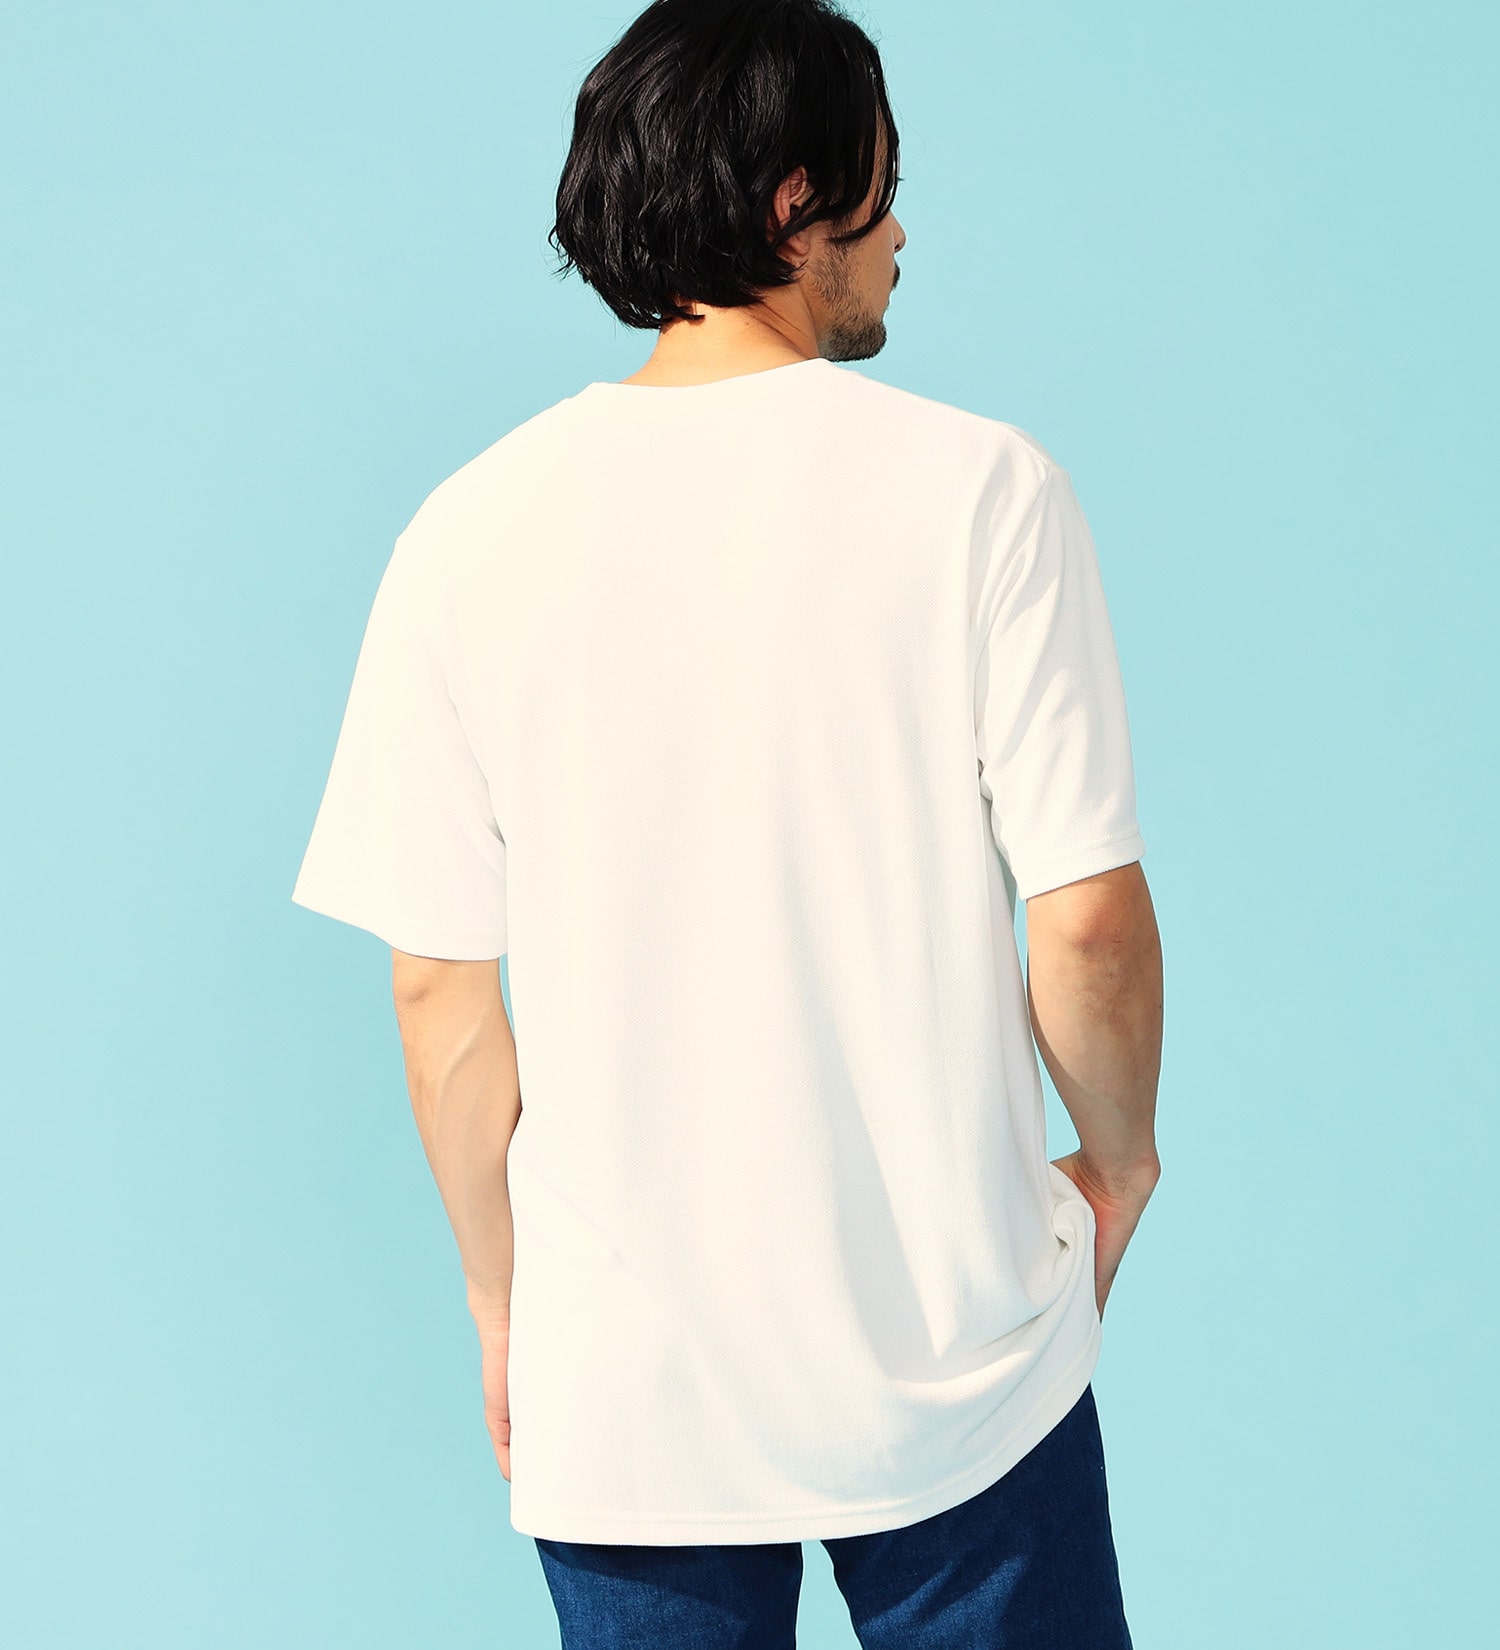 EDWIN(エドウイン)のCOOL FLEX 鹿の子Tシャツ 半袖|トップス/Tシャツ/カットソー/メンズ|ホワイト